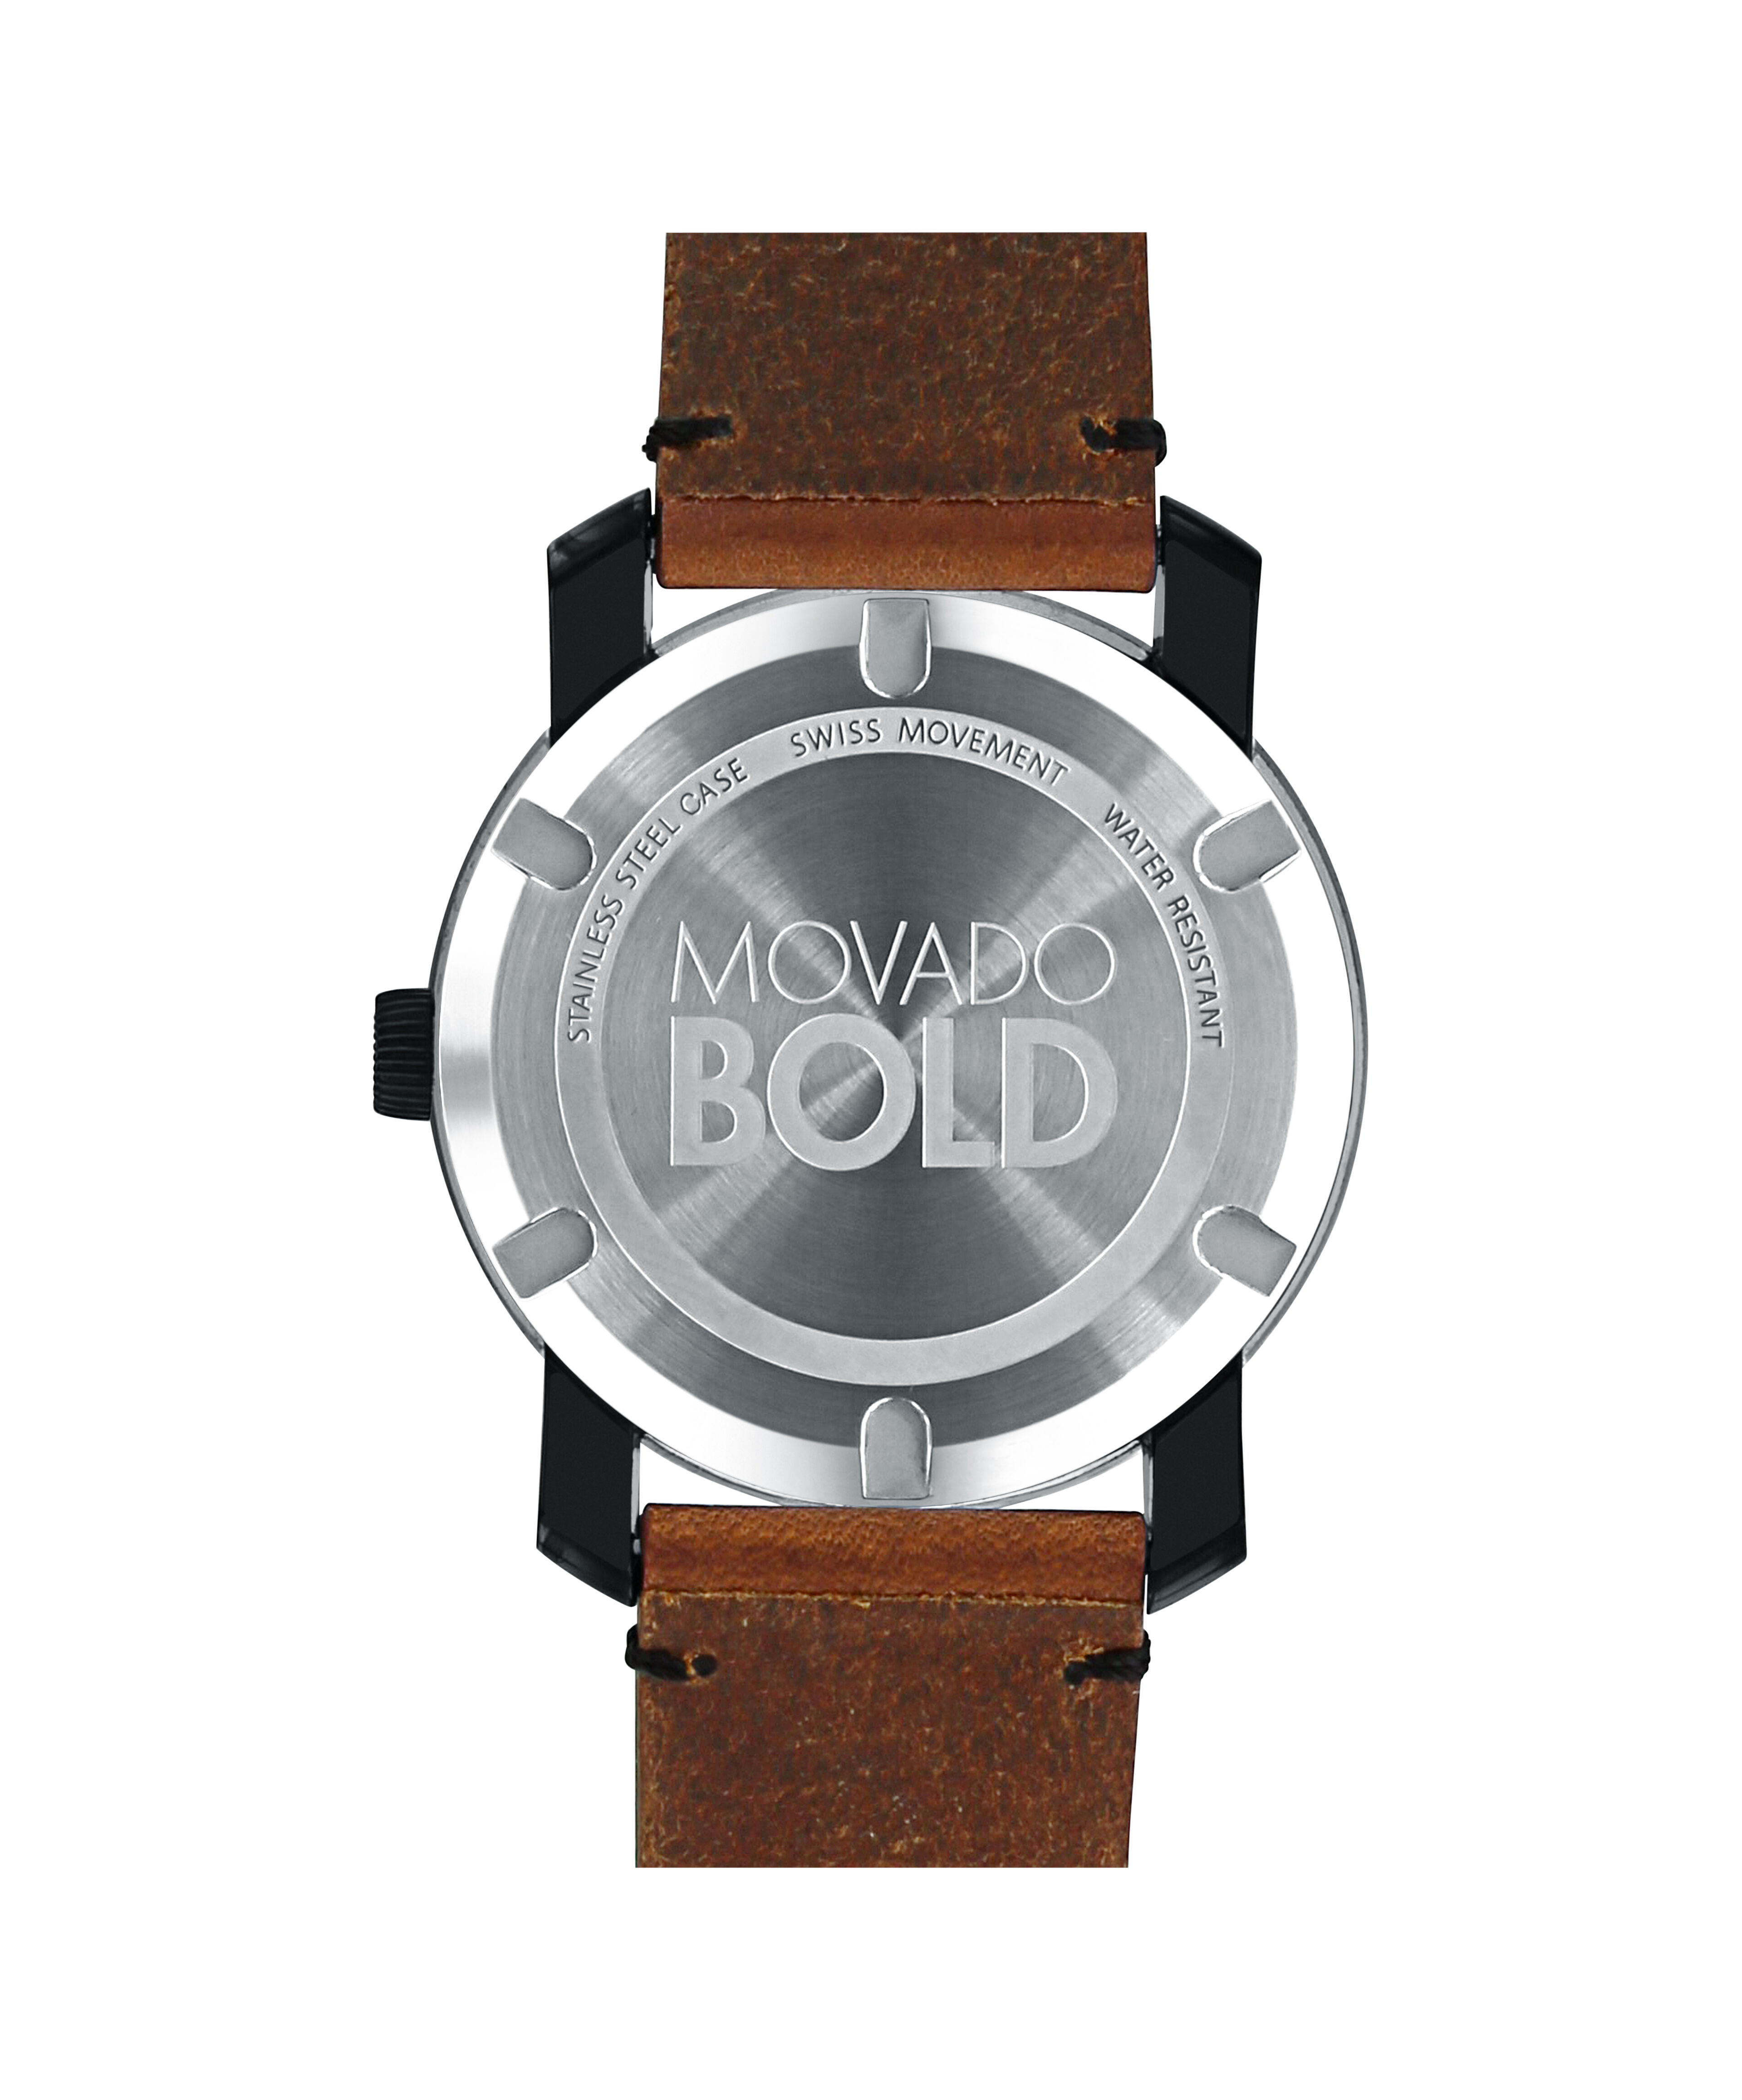 Movado vintageMovado vintage steel 33mm solidograf watch mint condition